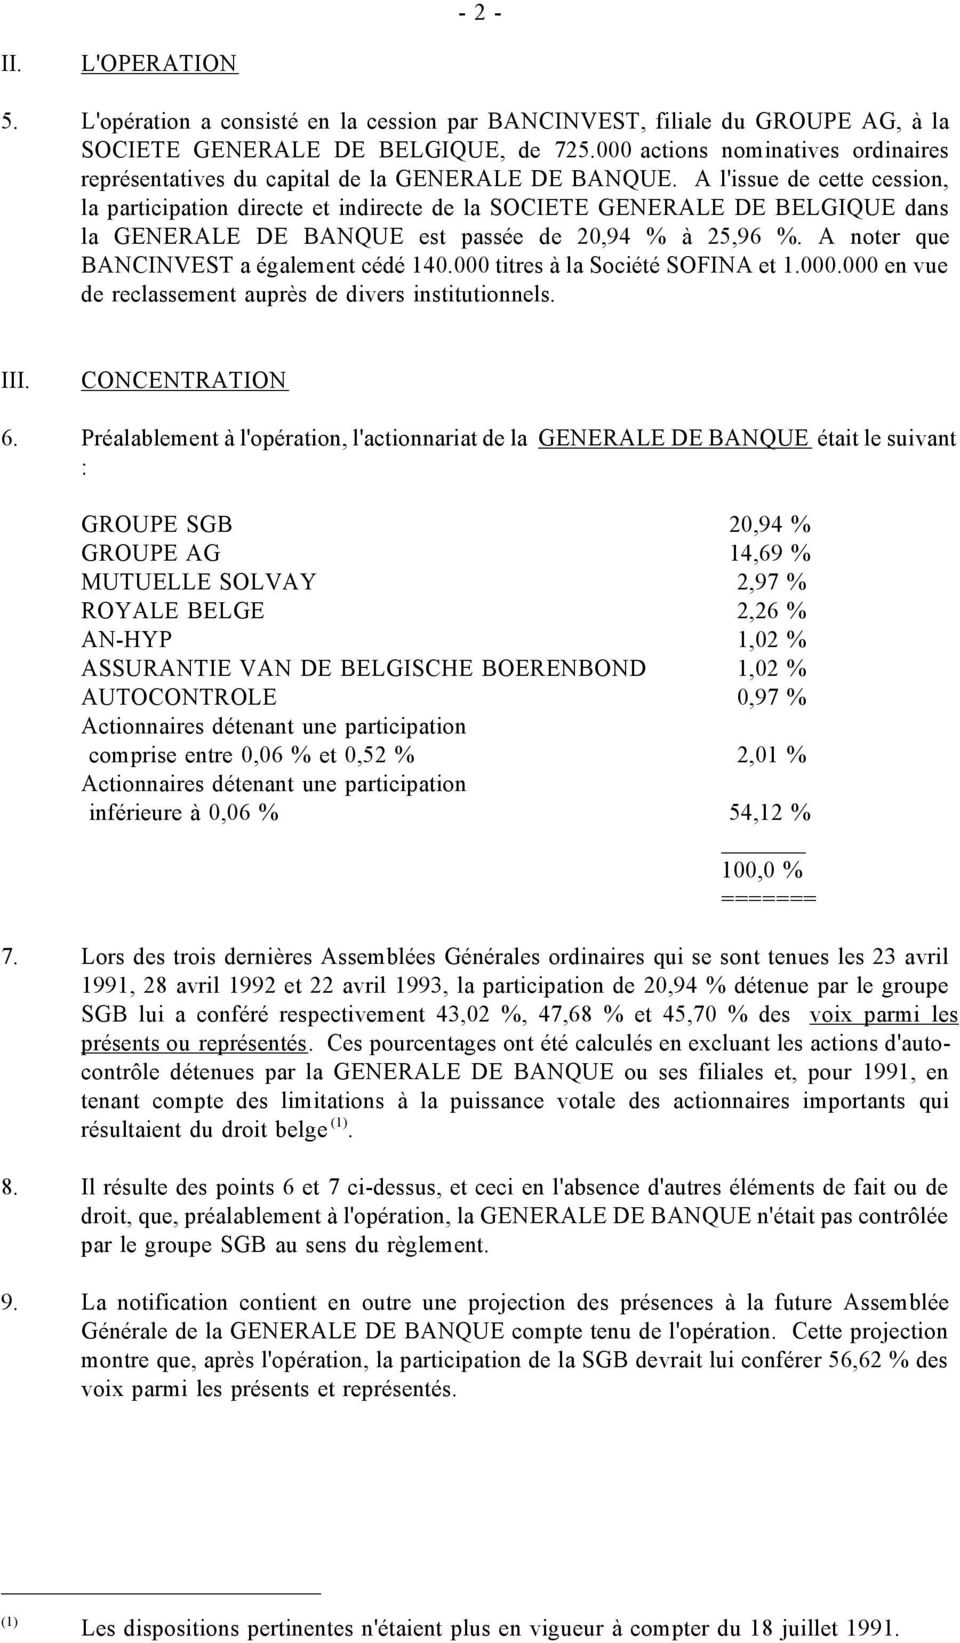 A l'issue de cette cession, la participation directe et indirecte de la SOCIETE GENERALE DE BELGIQUE dans la GENERALE DE BANQUE est passée de 20,94 % à 25,96 %.